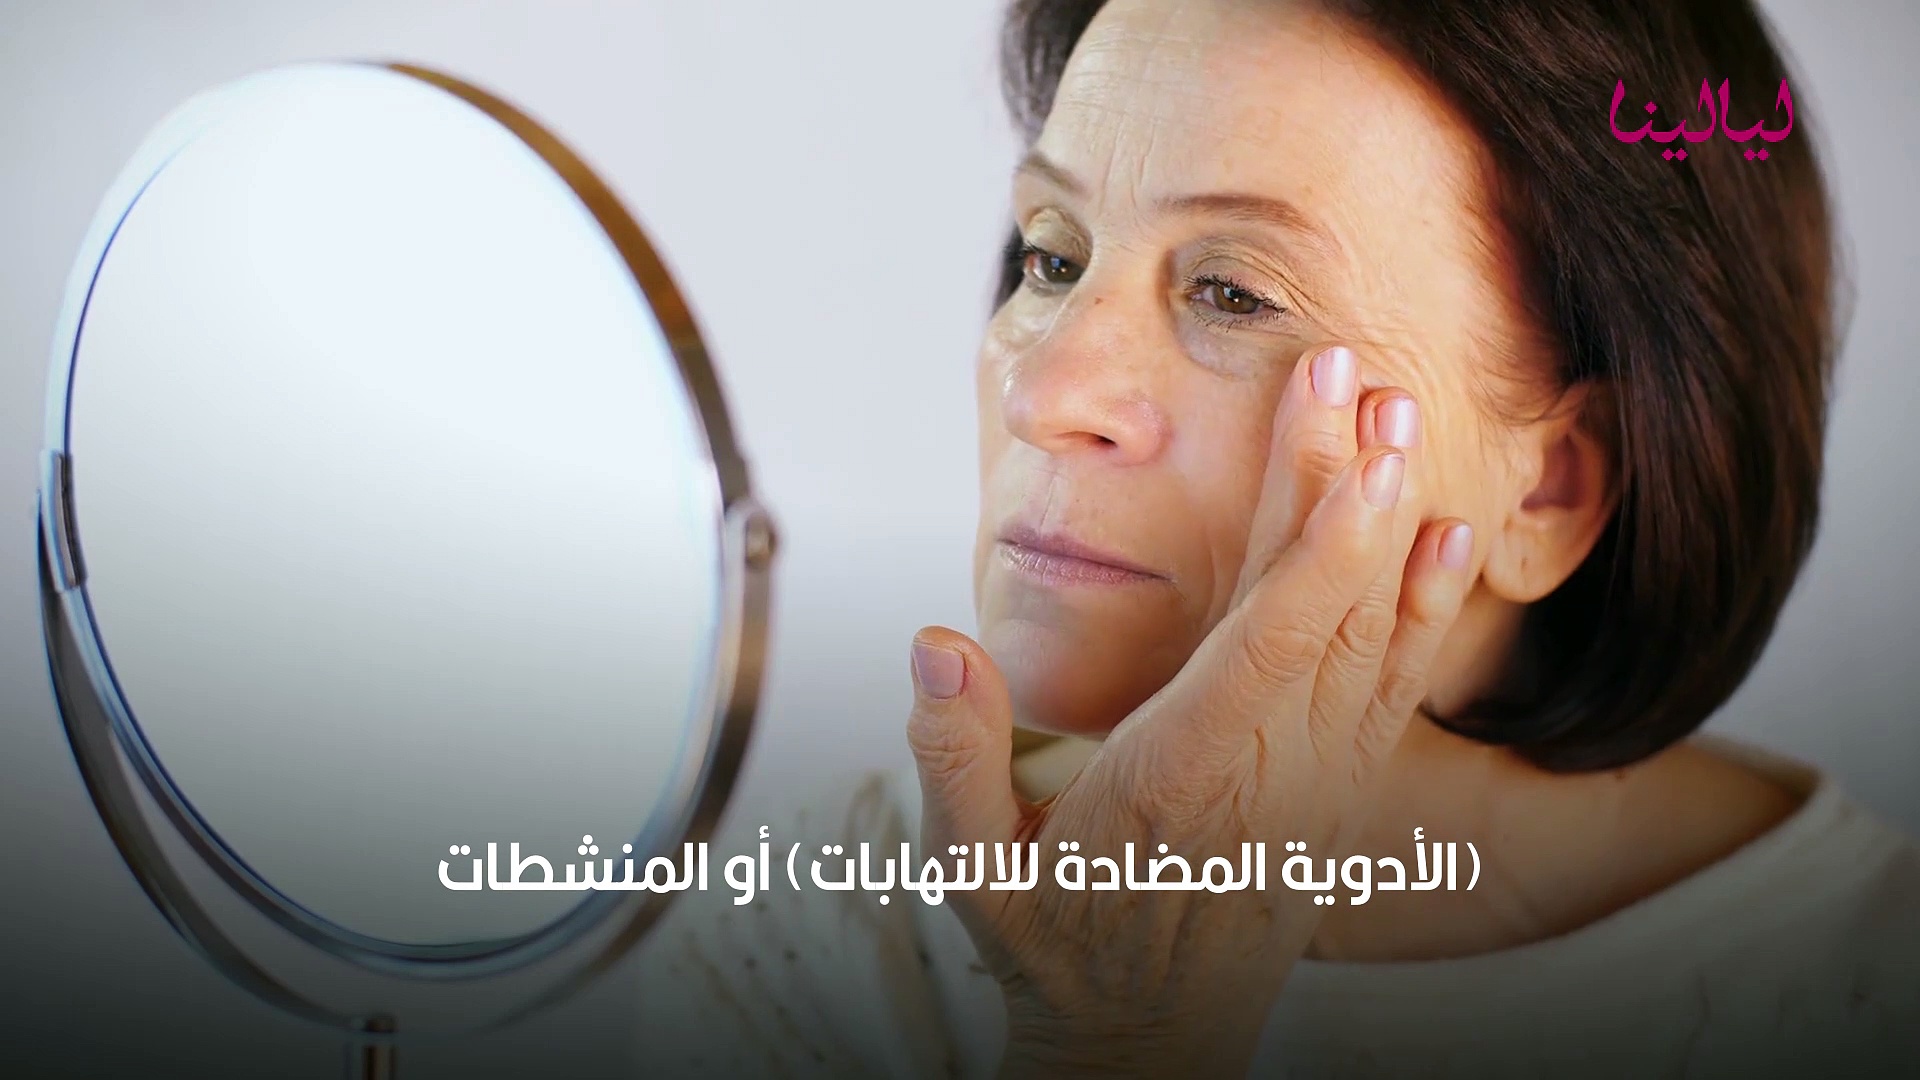 وصفات لعلاج تورم الوجه - ليالينا